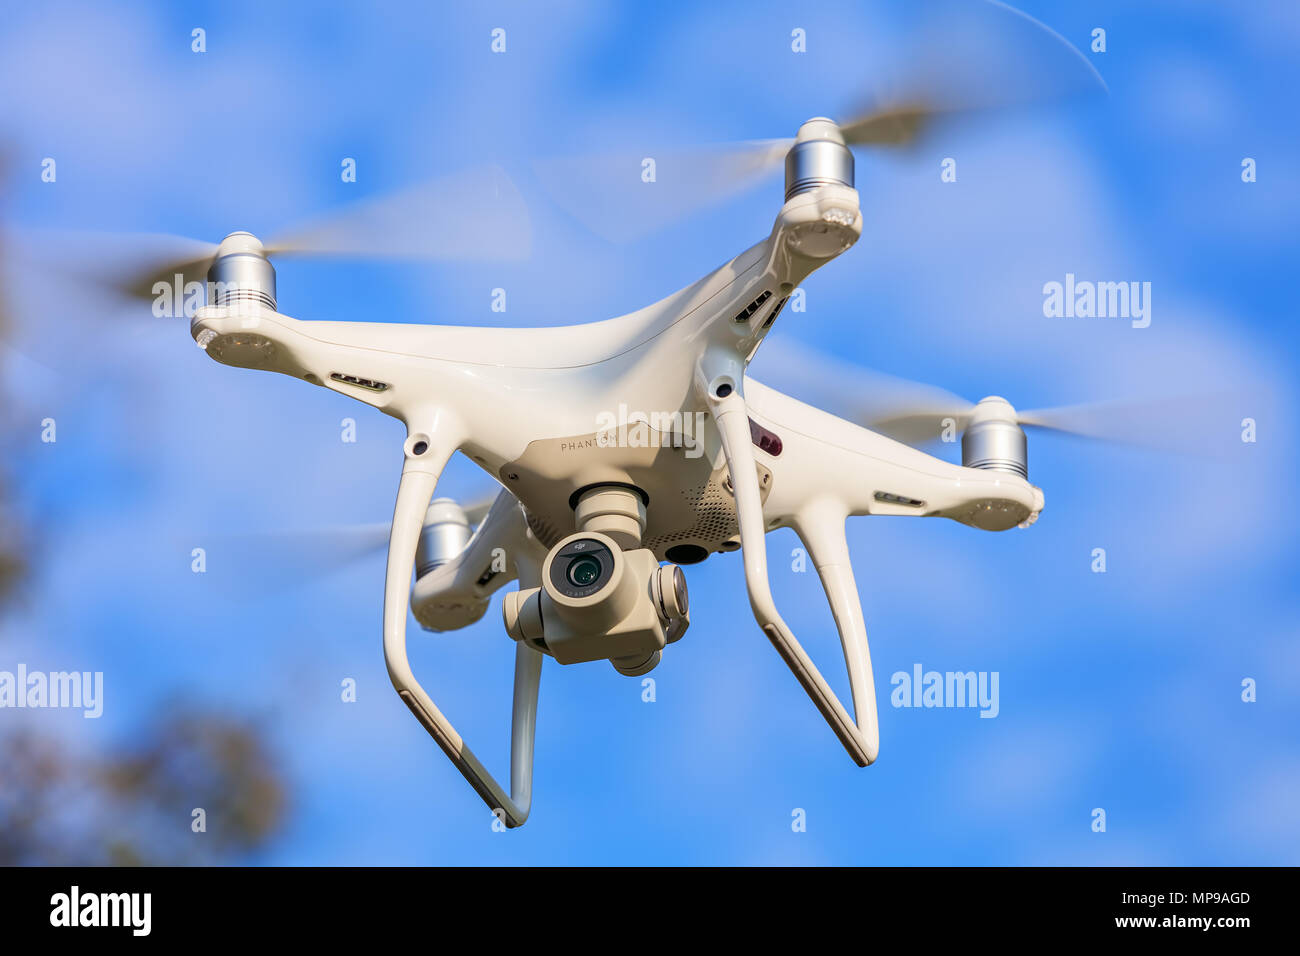 Eine DJI-Phantom 4 Pro Drohne fliegen, blauen Himmel im Hintergrund,  selektiver Fokus auf der Vorderseite der Drohne Stockfotografie - Alamy